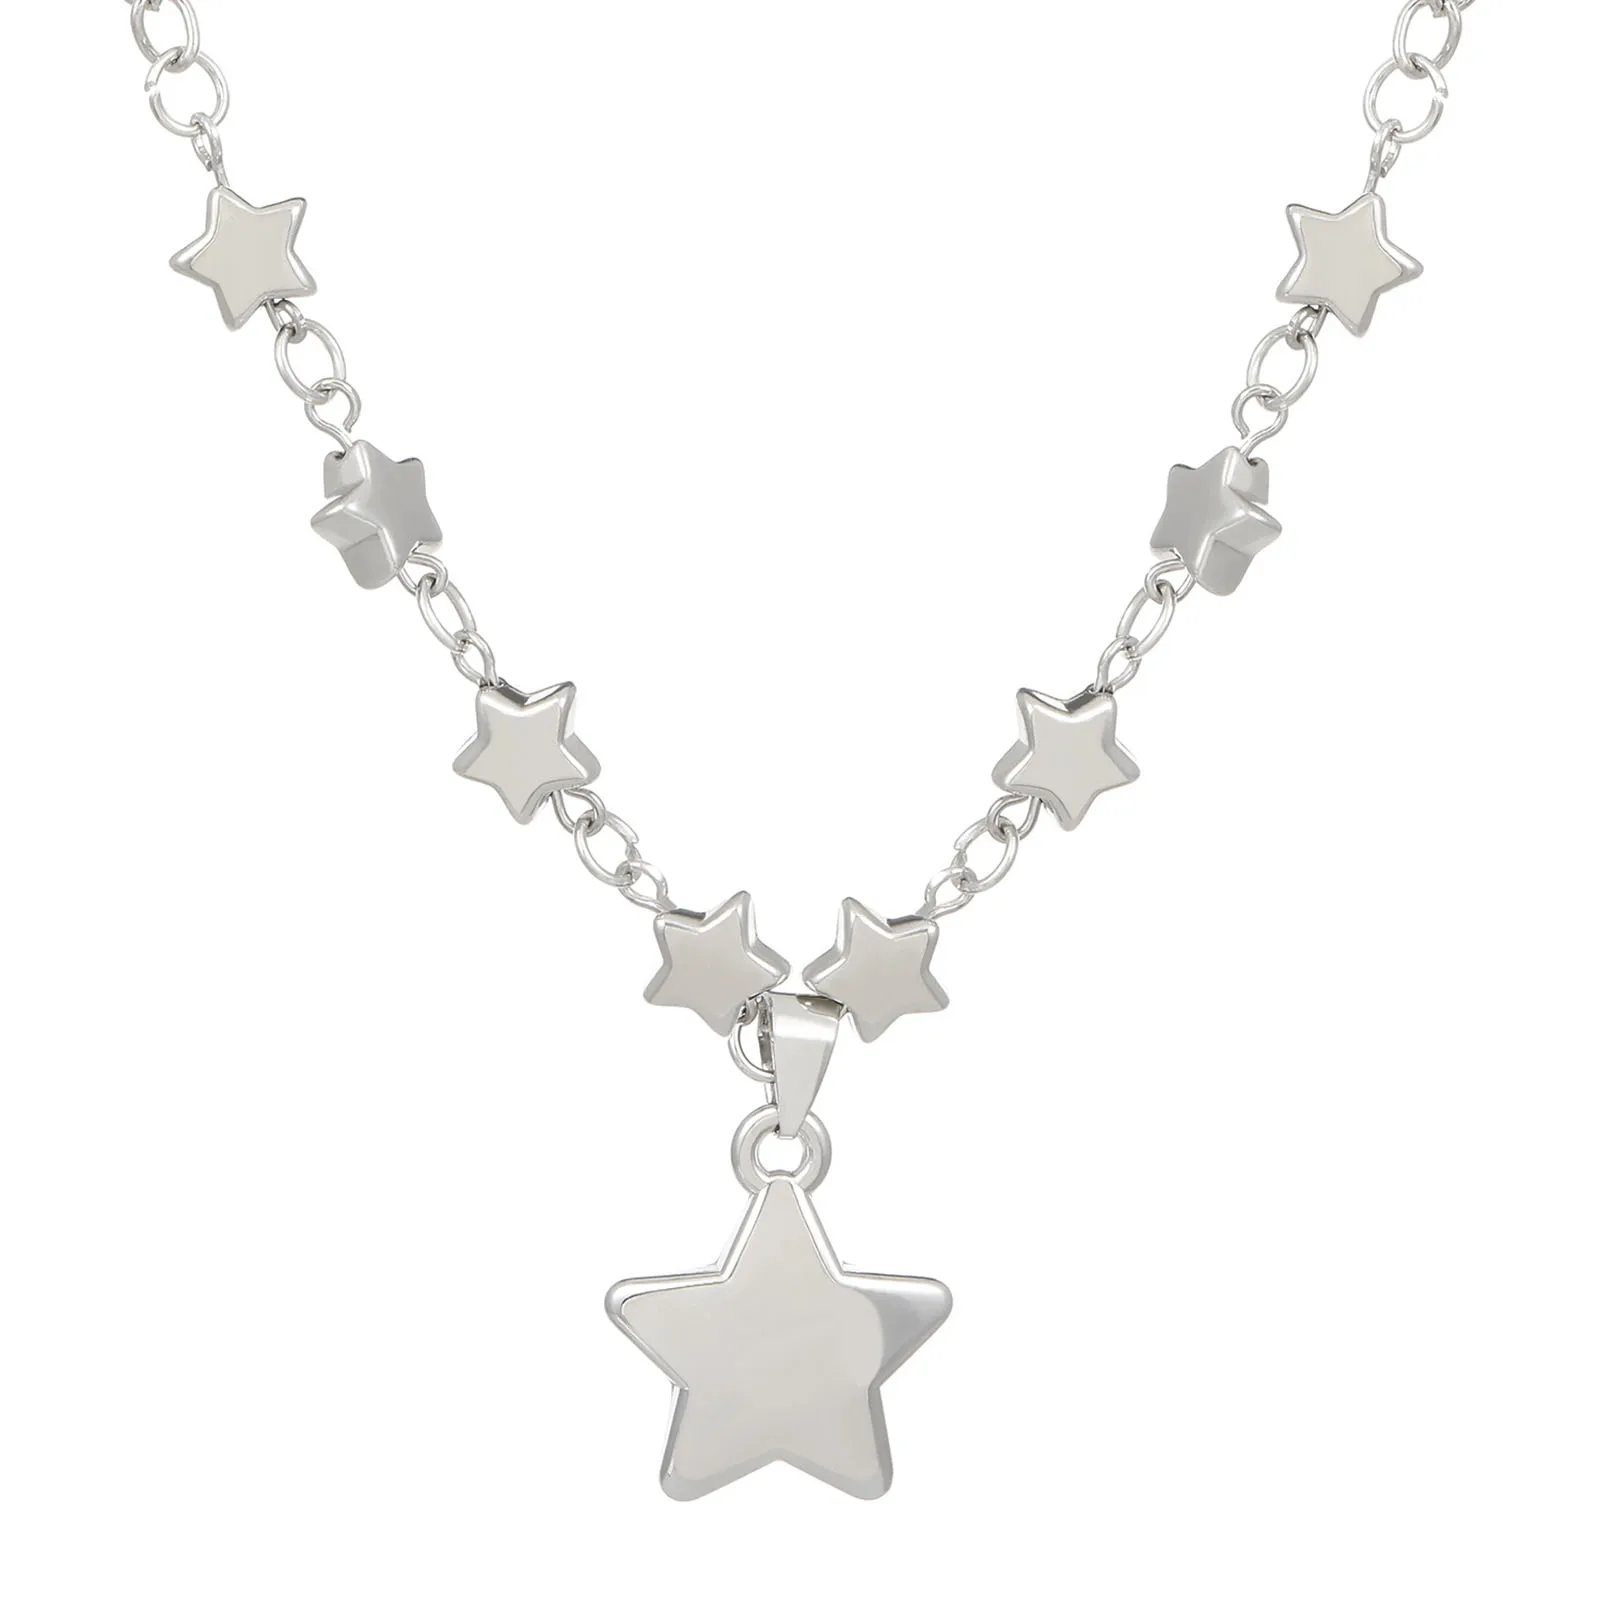 Унисекс, ожерелье с подвеской в виде звезды, модное украшение на шею, приятное для кожи, в подарок на годовщину